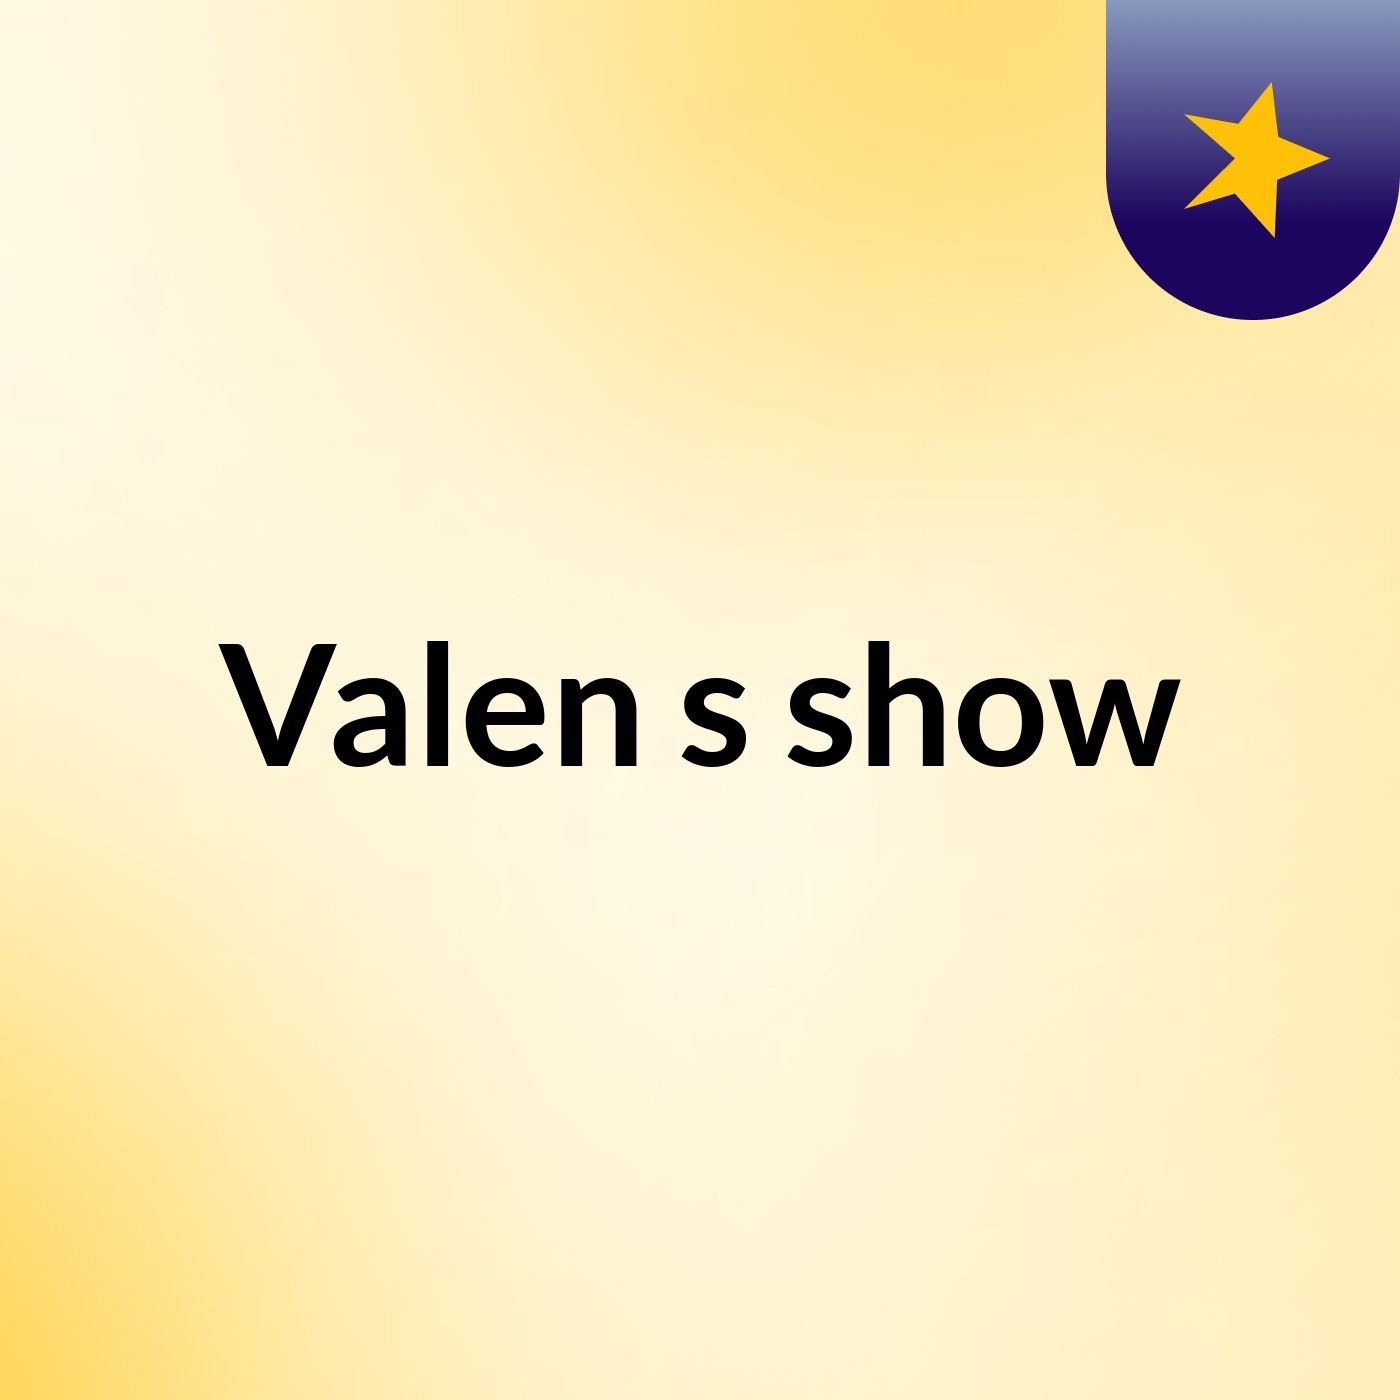 Valen's show